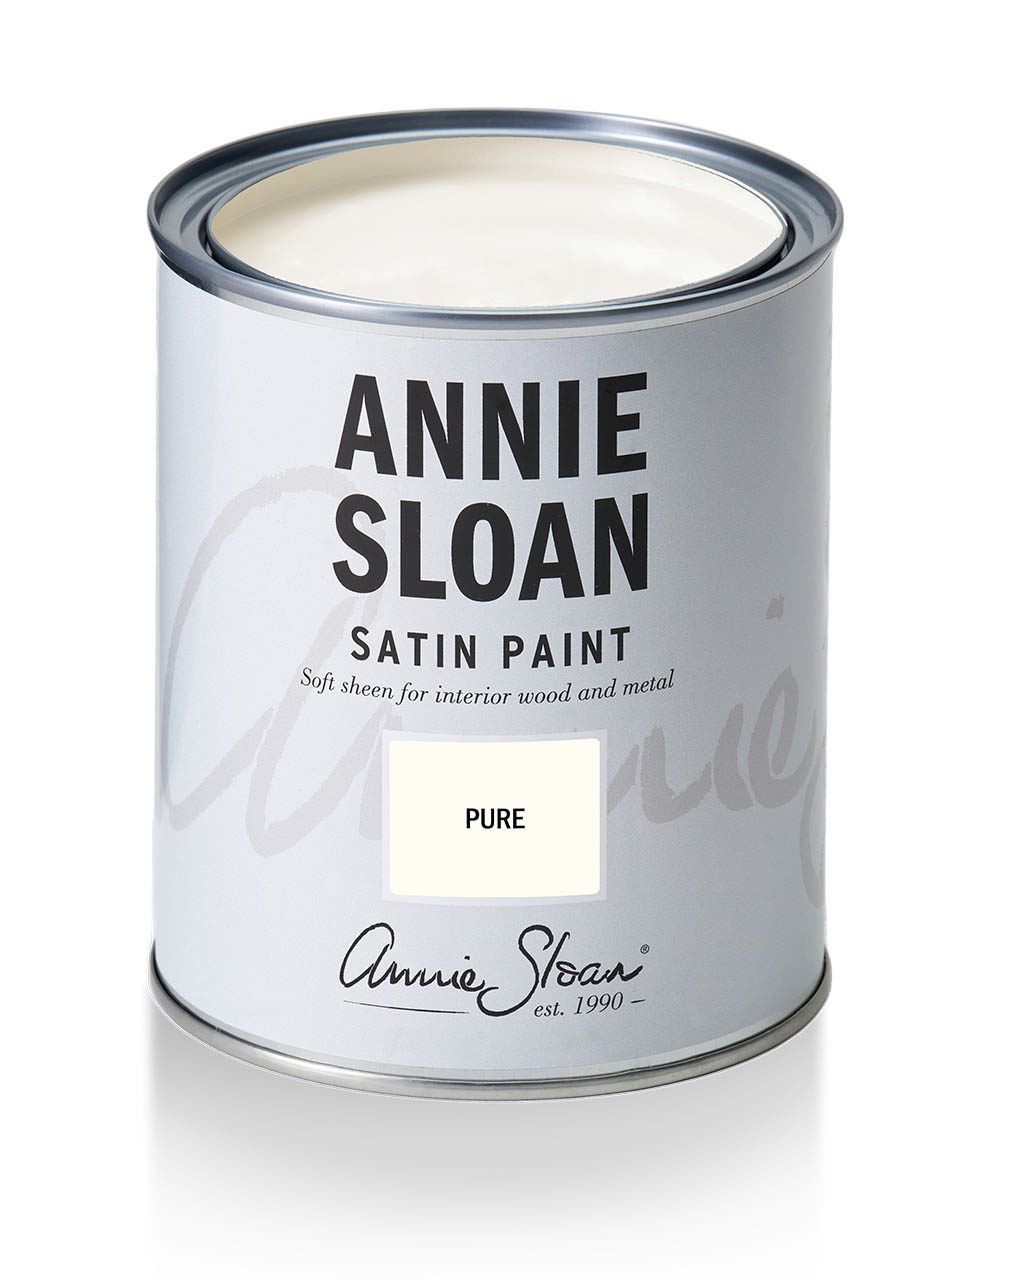 žiarivá čistá biela farba na nábytok - Satin Paint Annie Sloan Pure